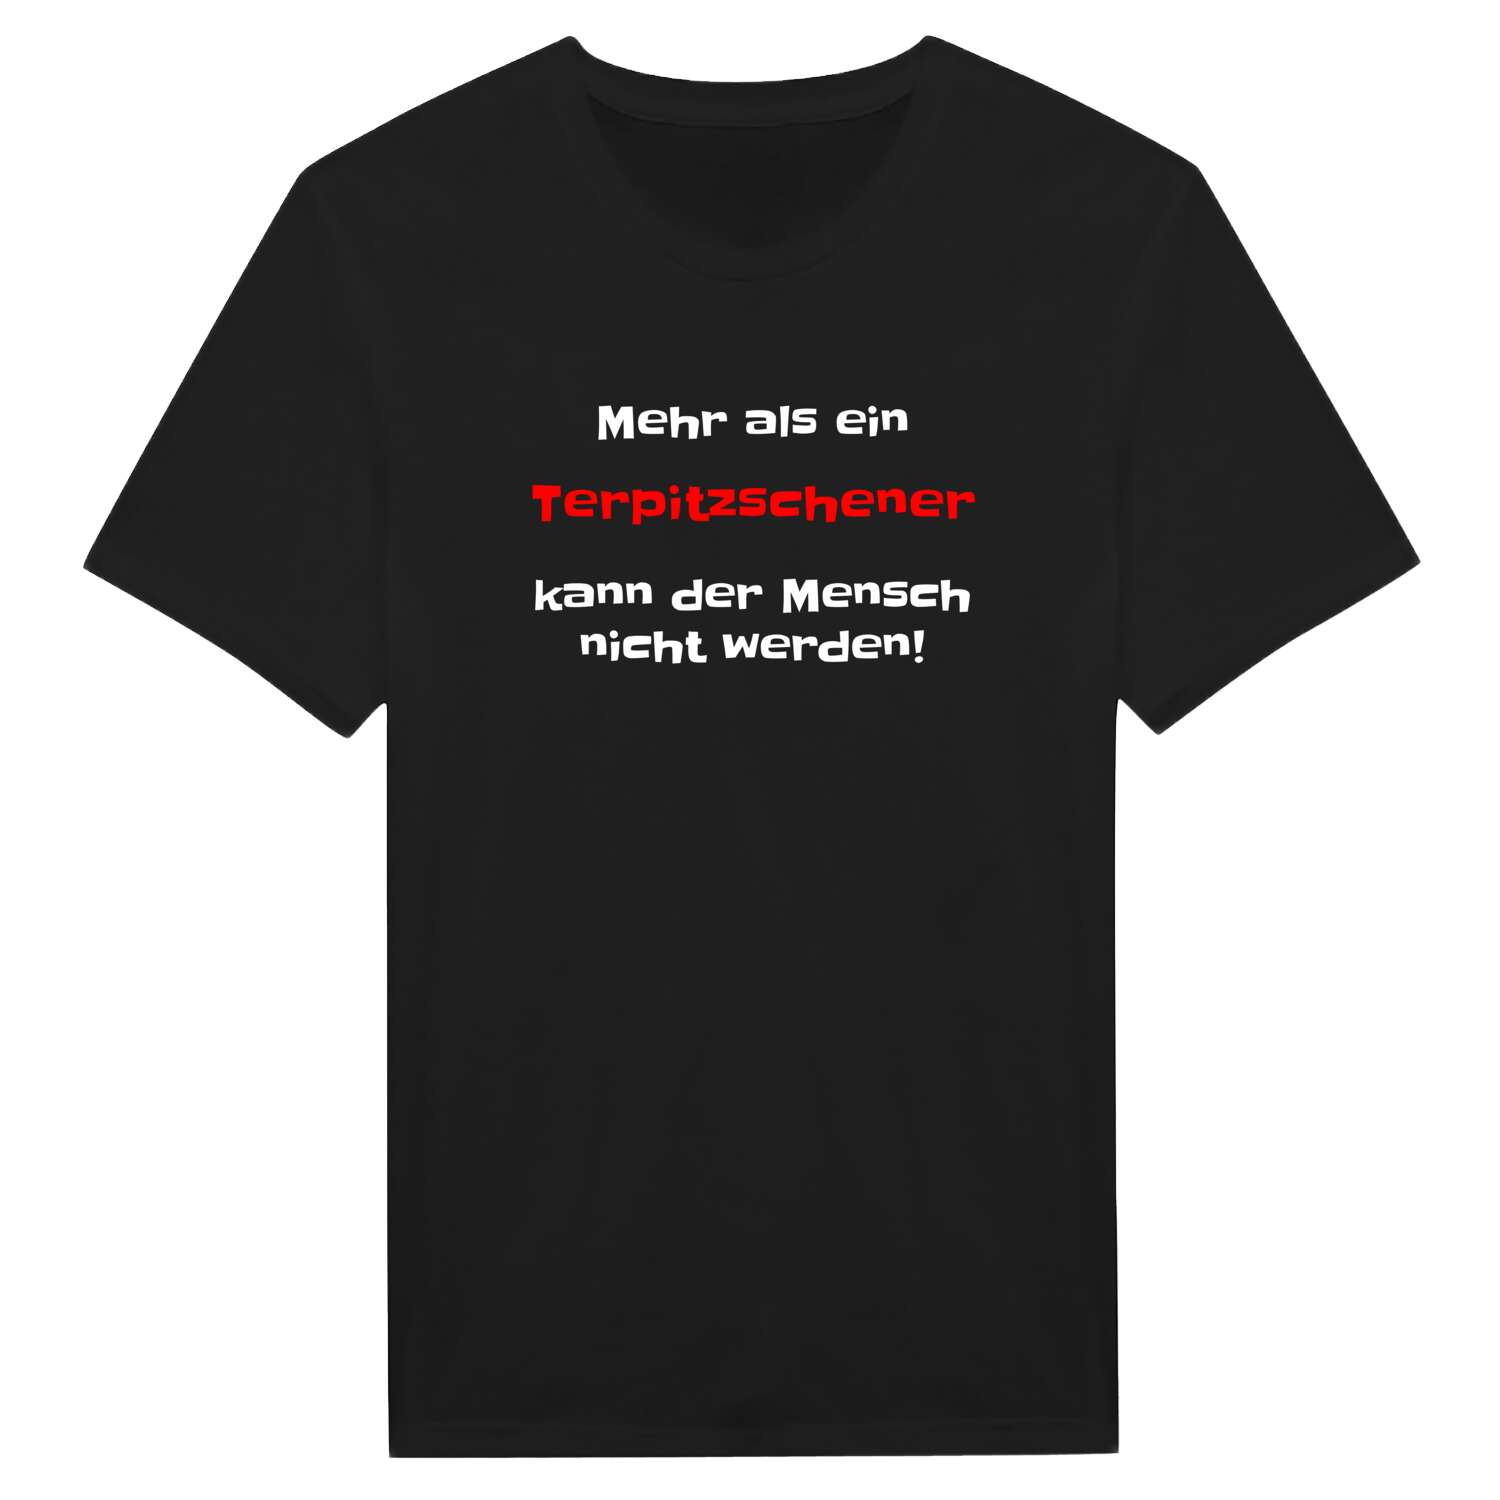 Terpitzsch T-Shirt »Mehr als ein«